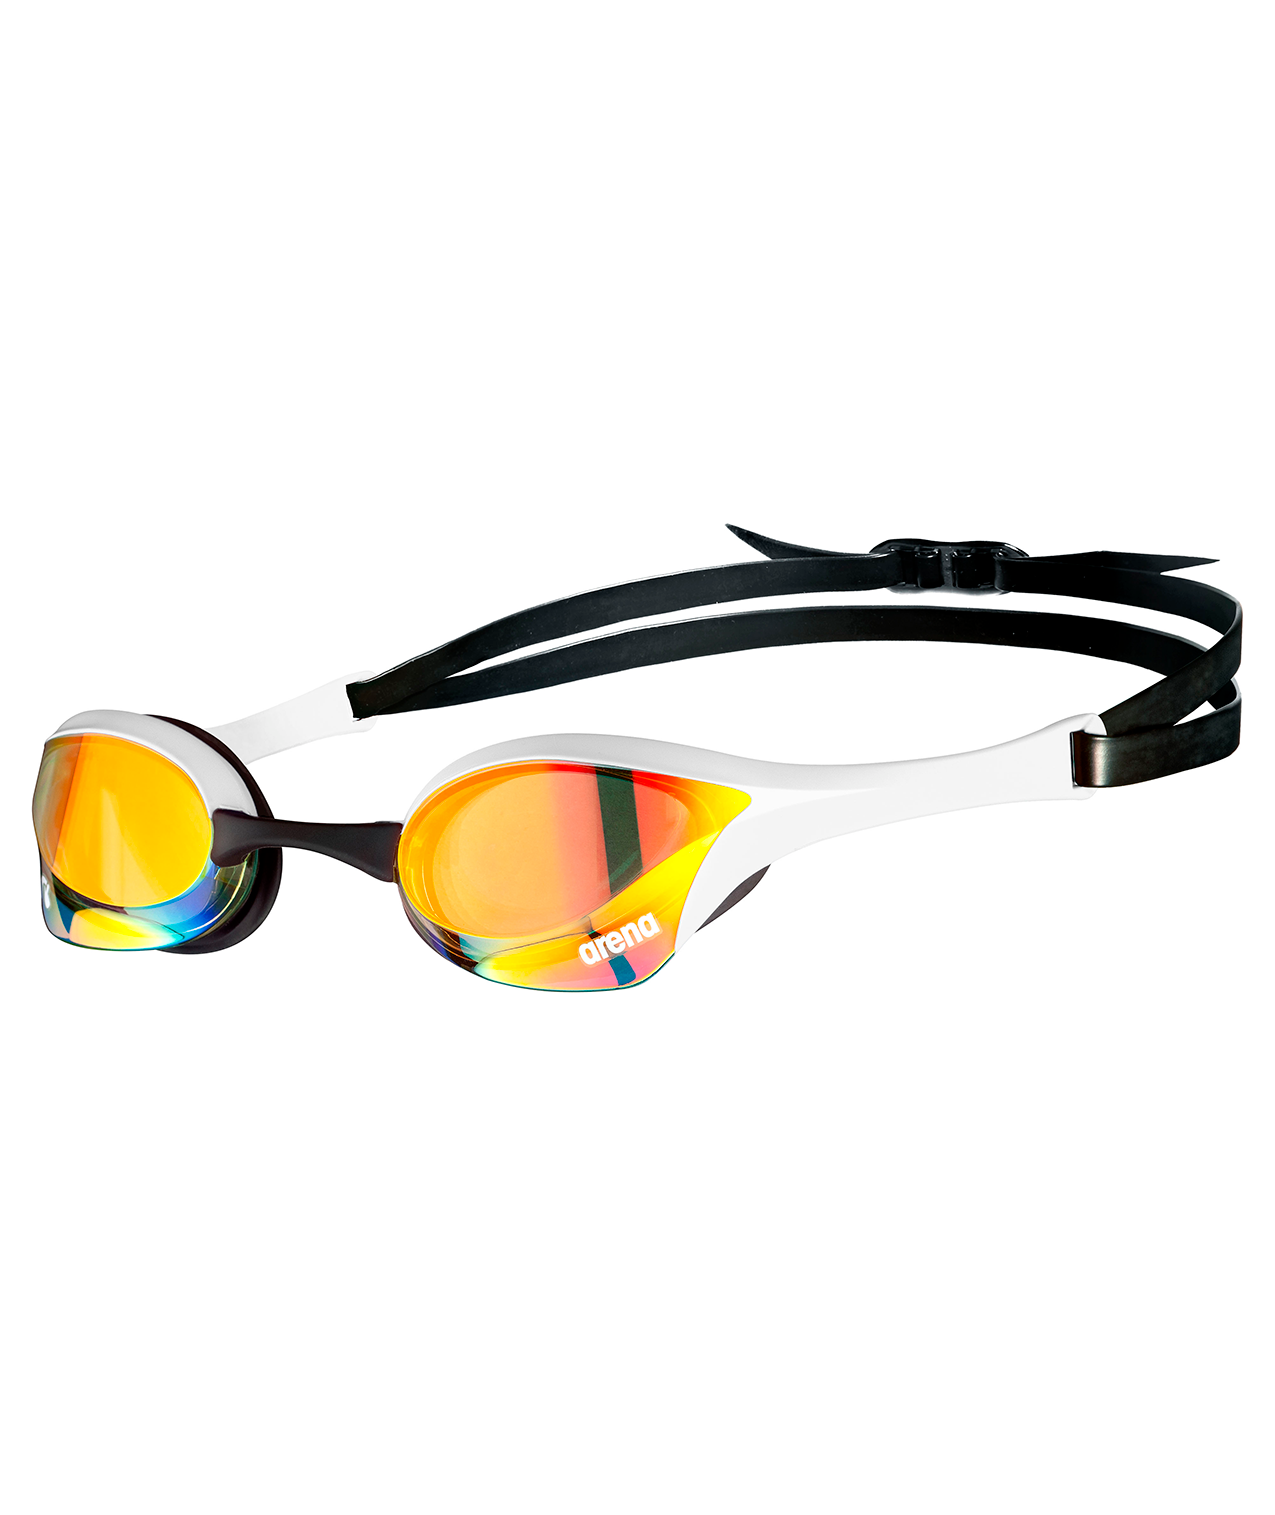 Gafas de natación Arena Cobra Ultra Swipe con lentes oscuras